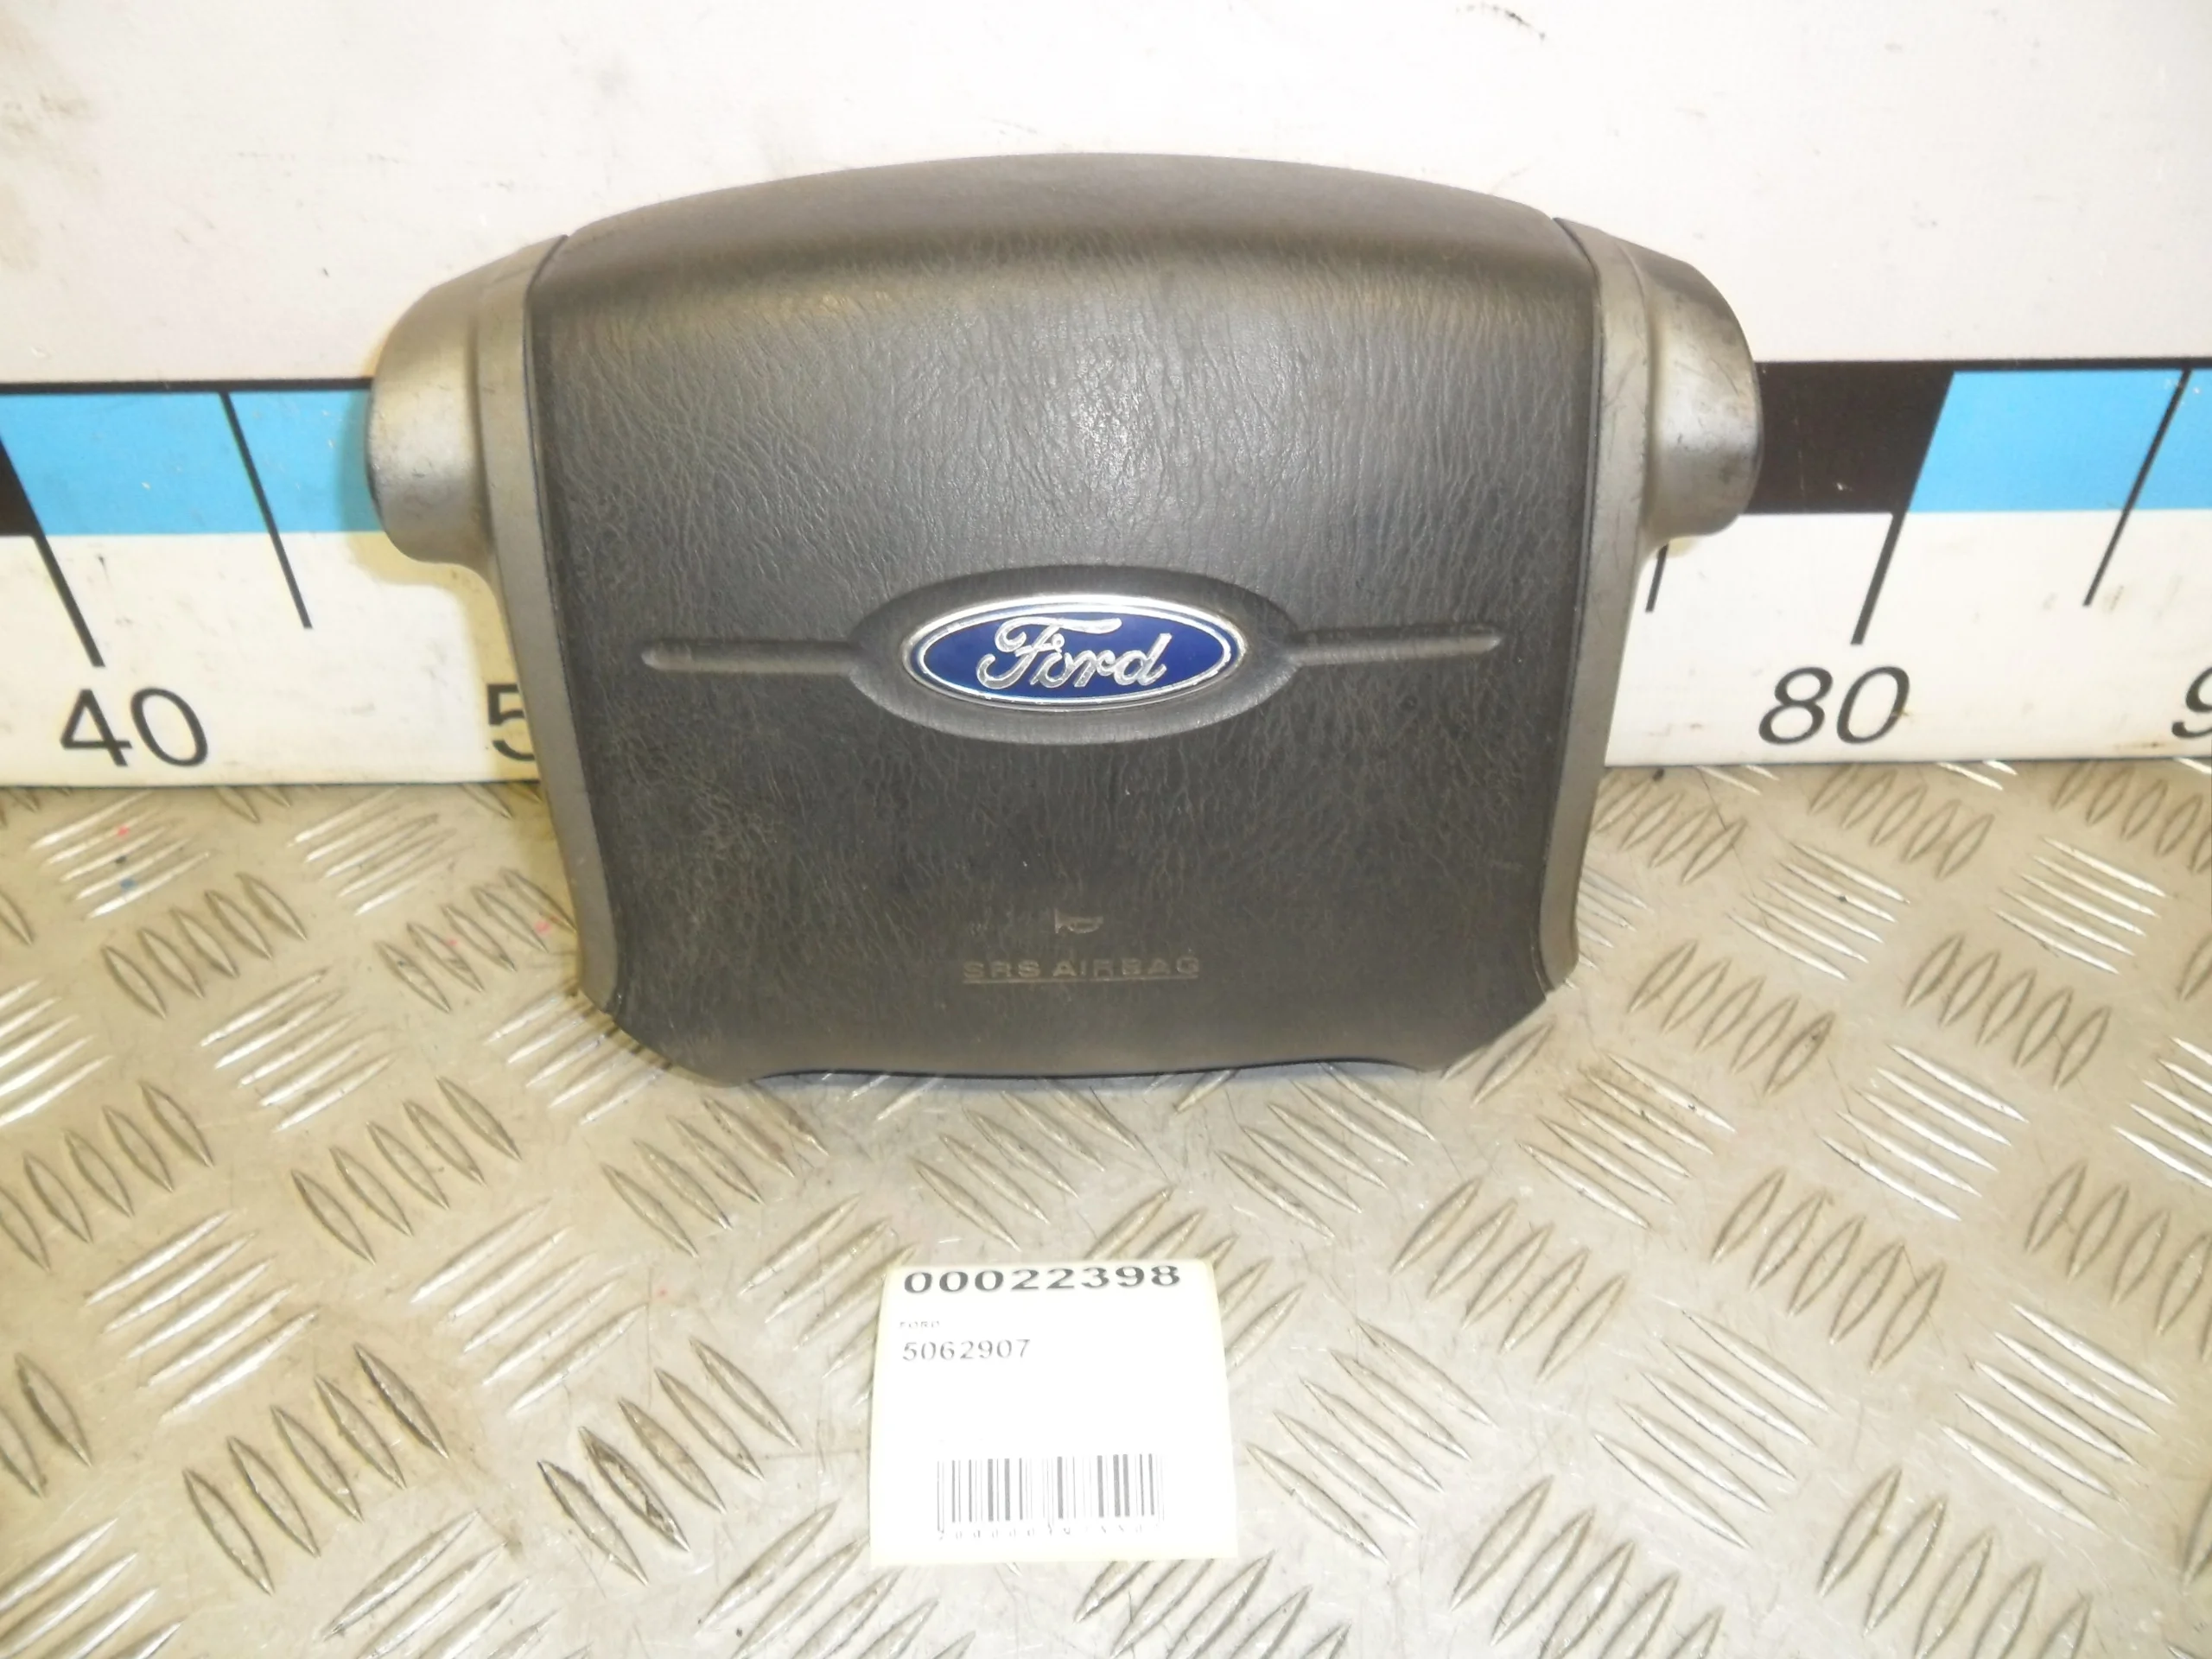 [Б/У] Подушка безопасности Ford Ranger 2008 - в рулевое колесо, потертости, царапина 2см [Незначительные дефекты]